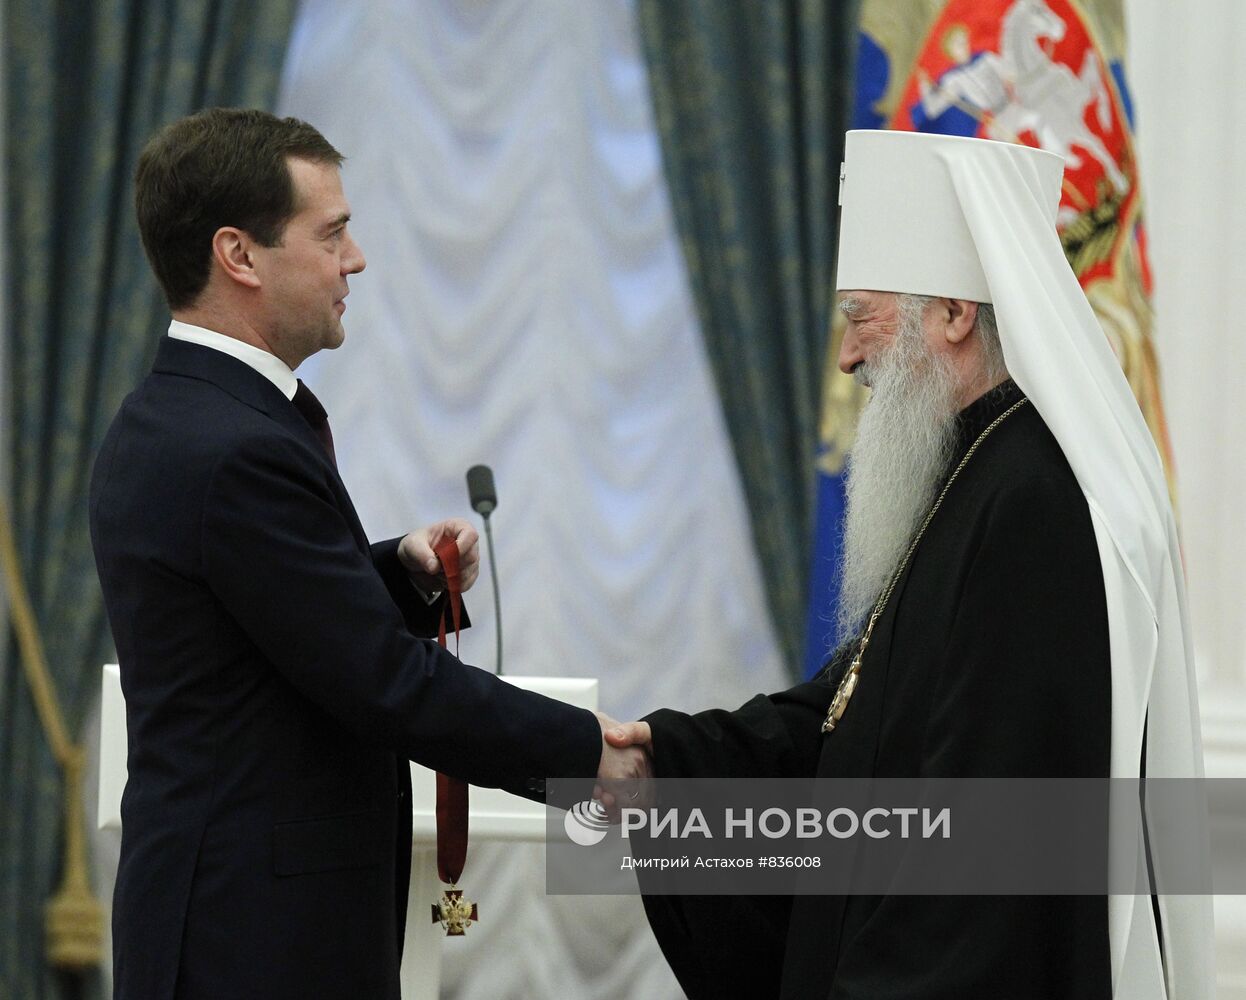 Дмитрий Медведев вручил государственные награды в Кремле